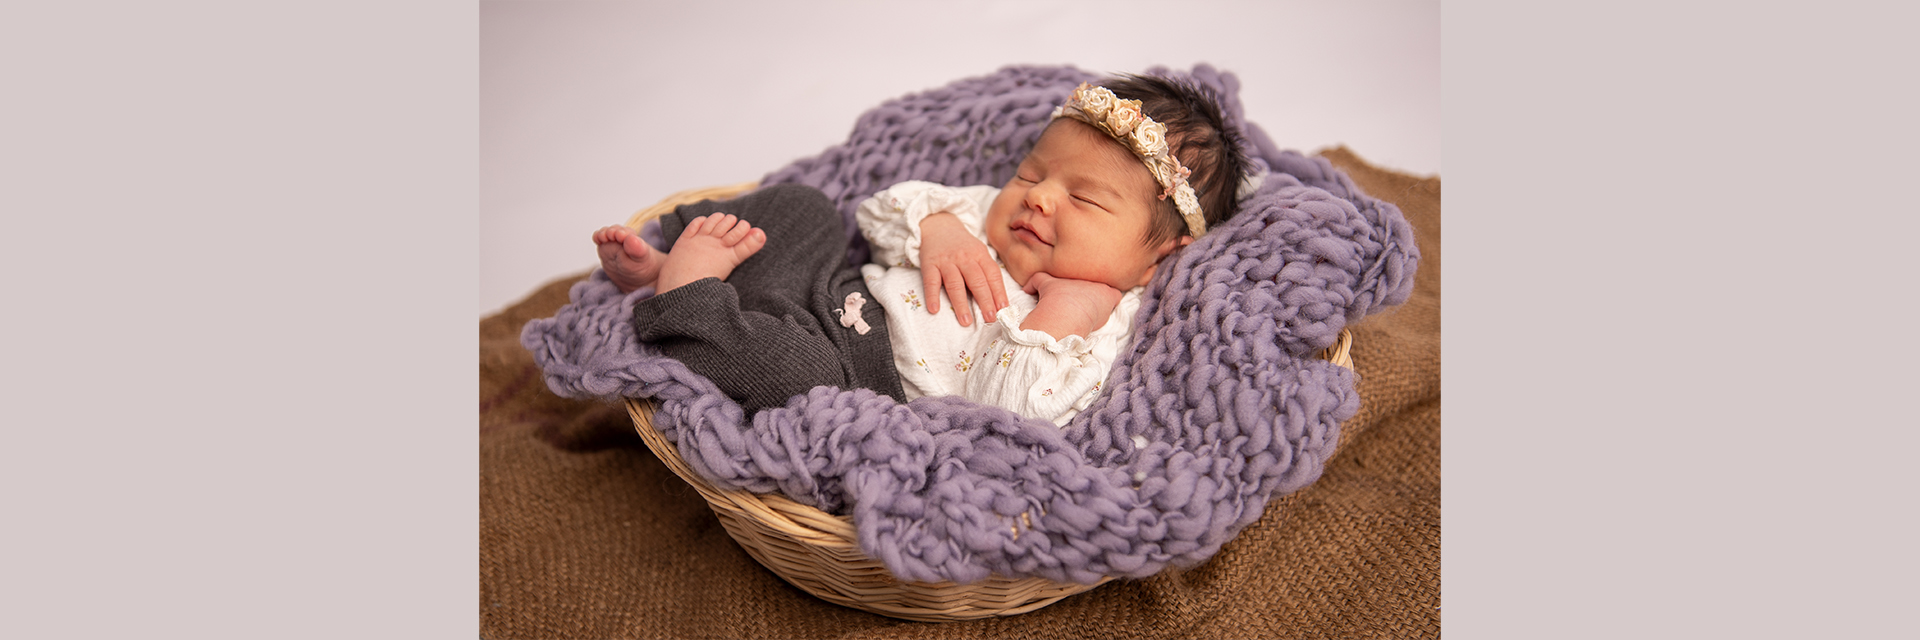 Newbornbaby das laechelt in Korb mit Blumenstrinband auf violetter Kuscheldecke